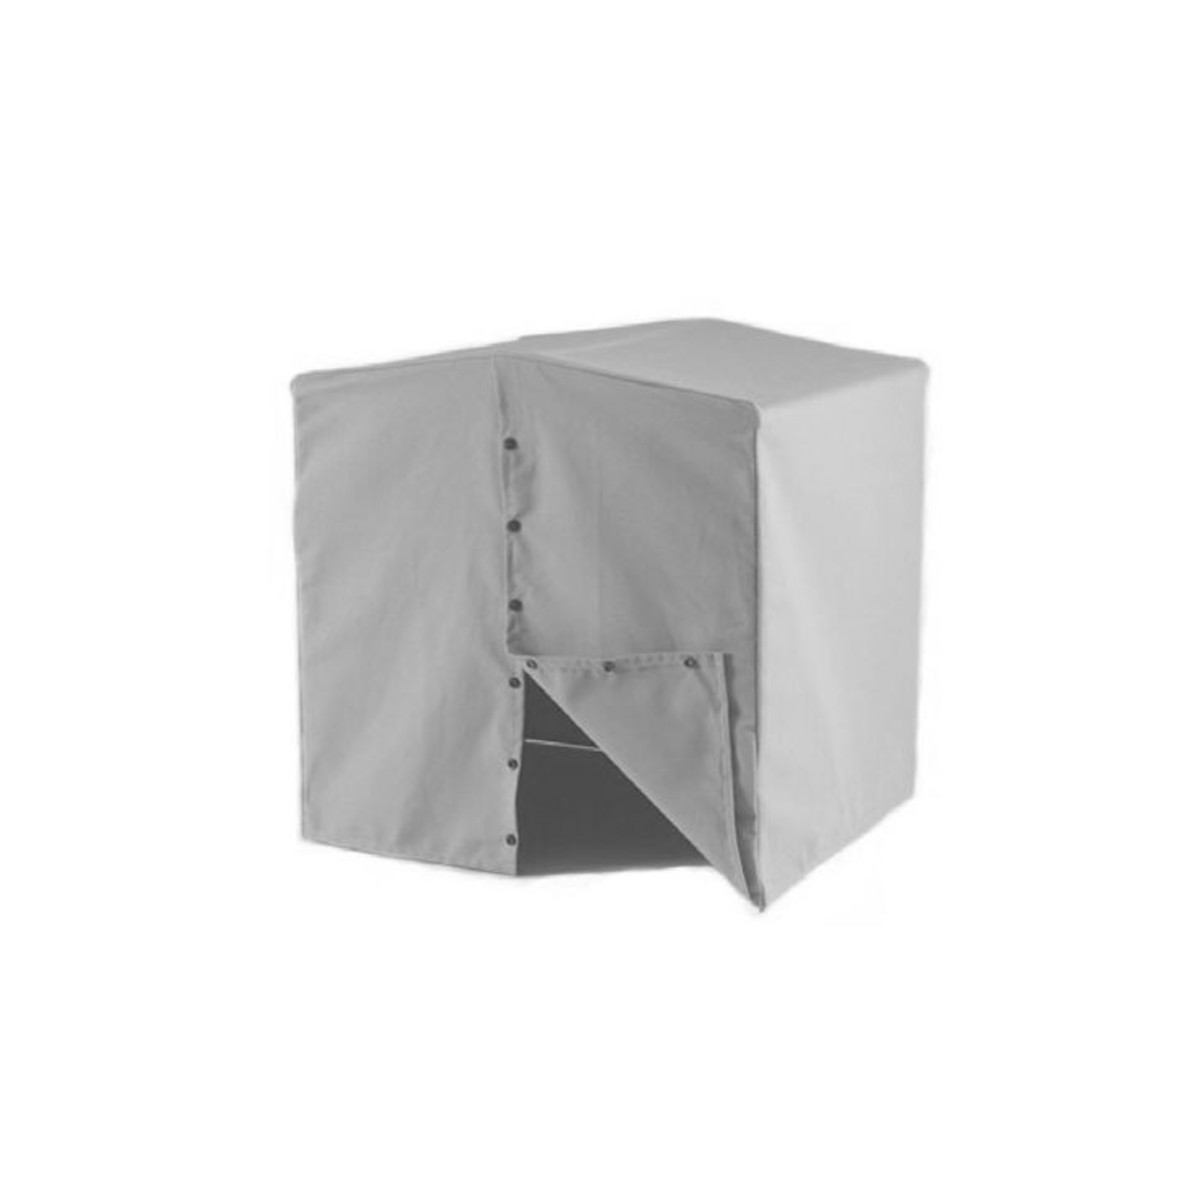 Model W Welding Tent - Proline Global